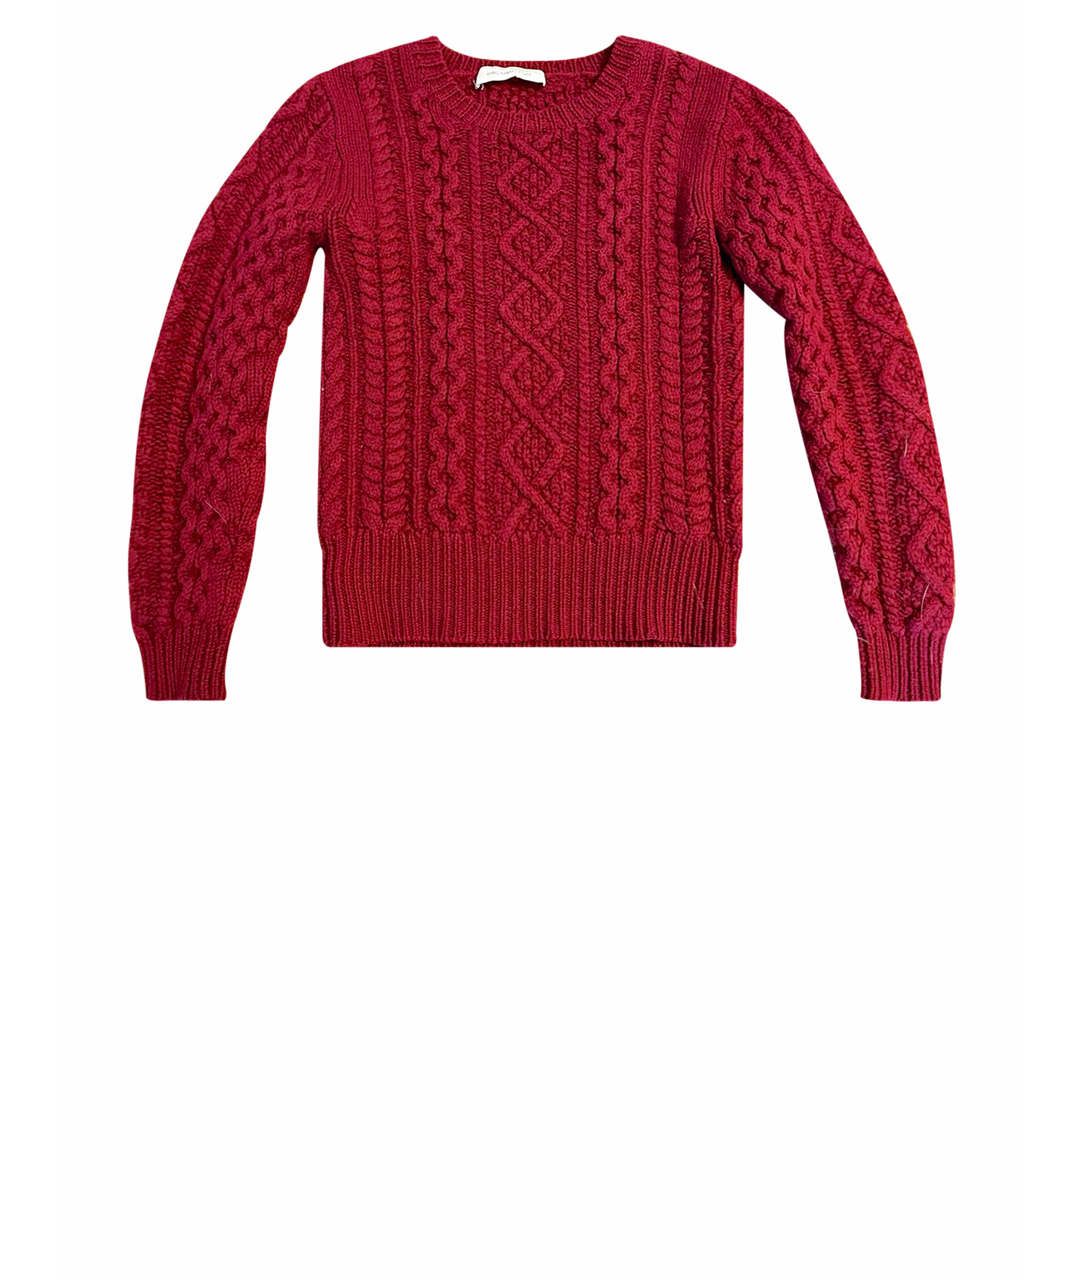 ISABEL MARANT ETOILE Бордовый шерстяной джемпер / свитер, фото 1